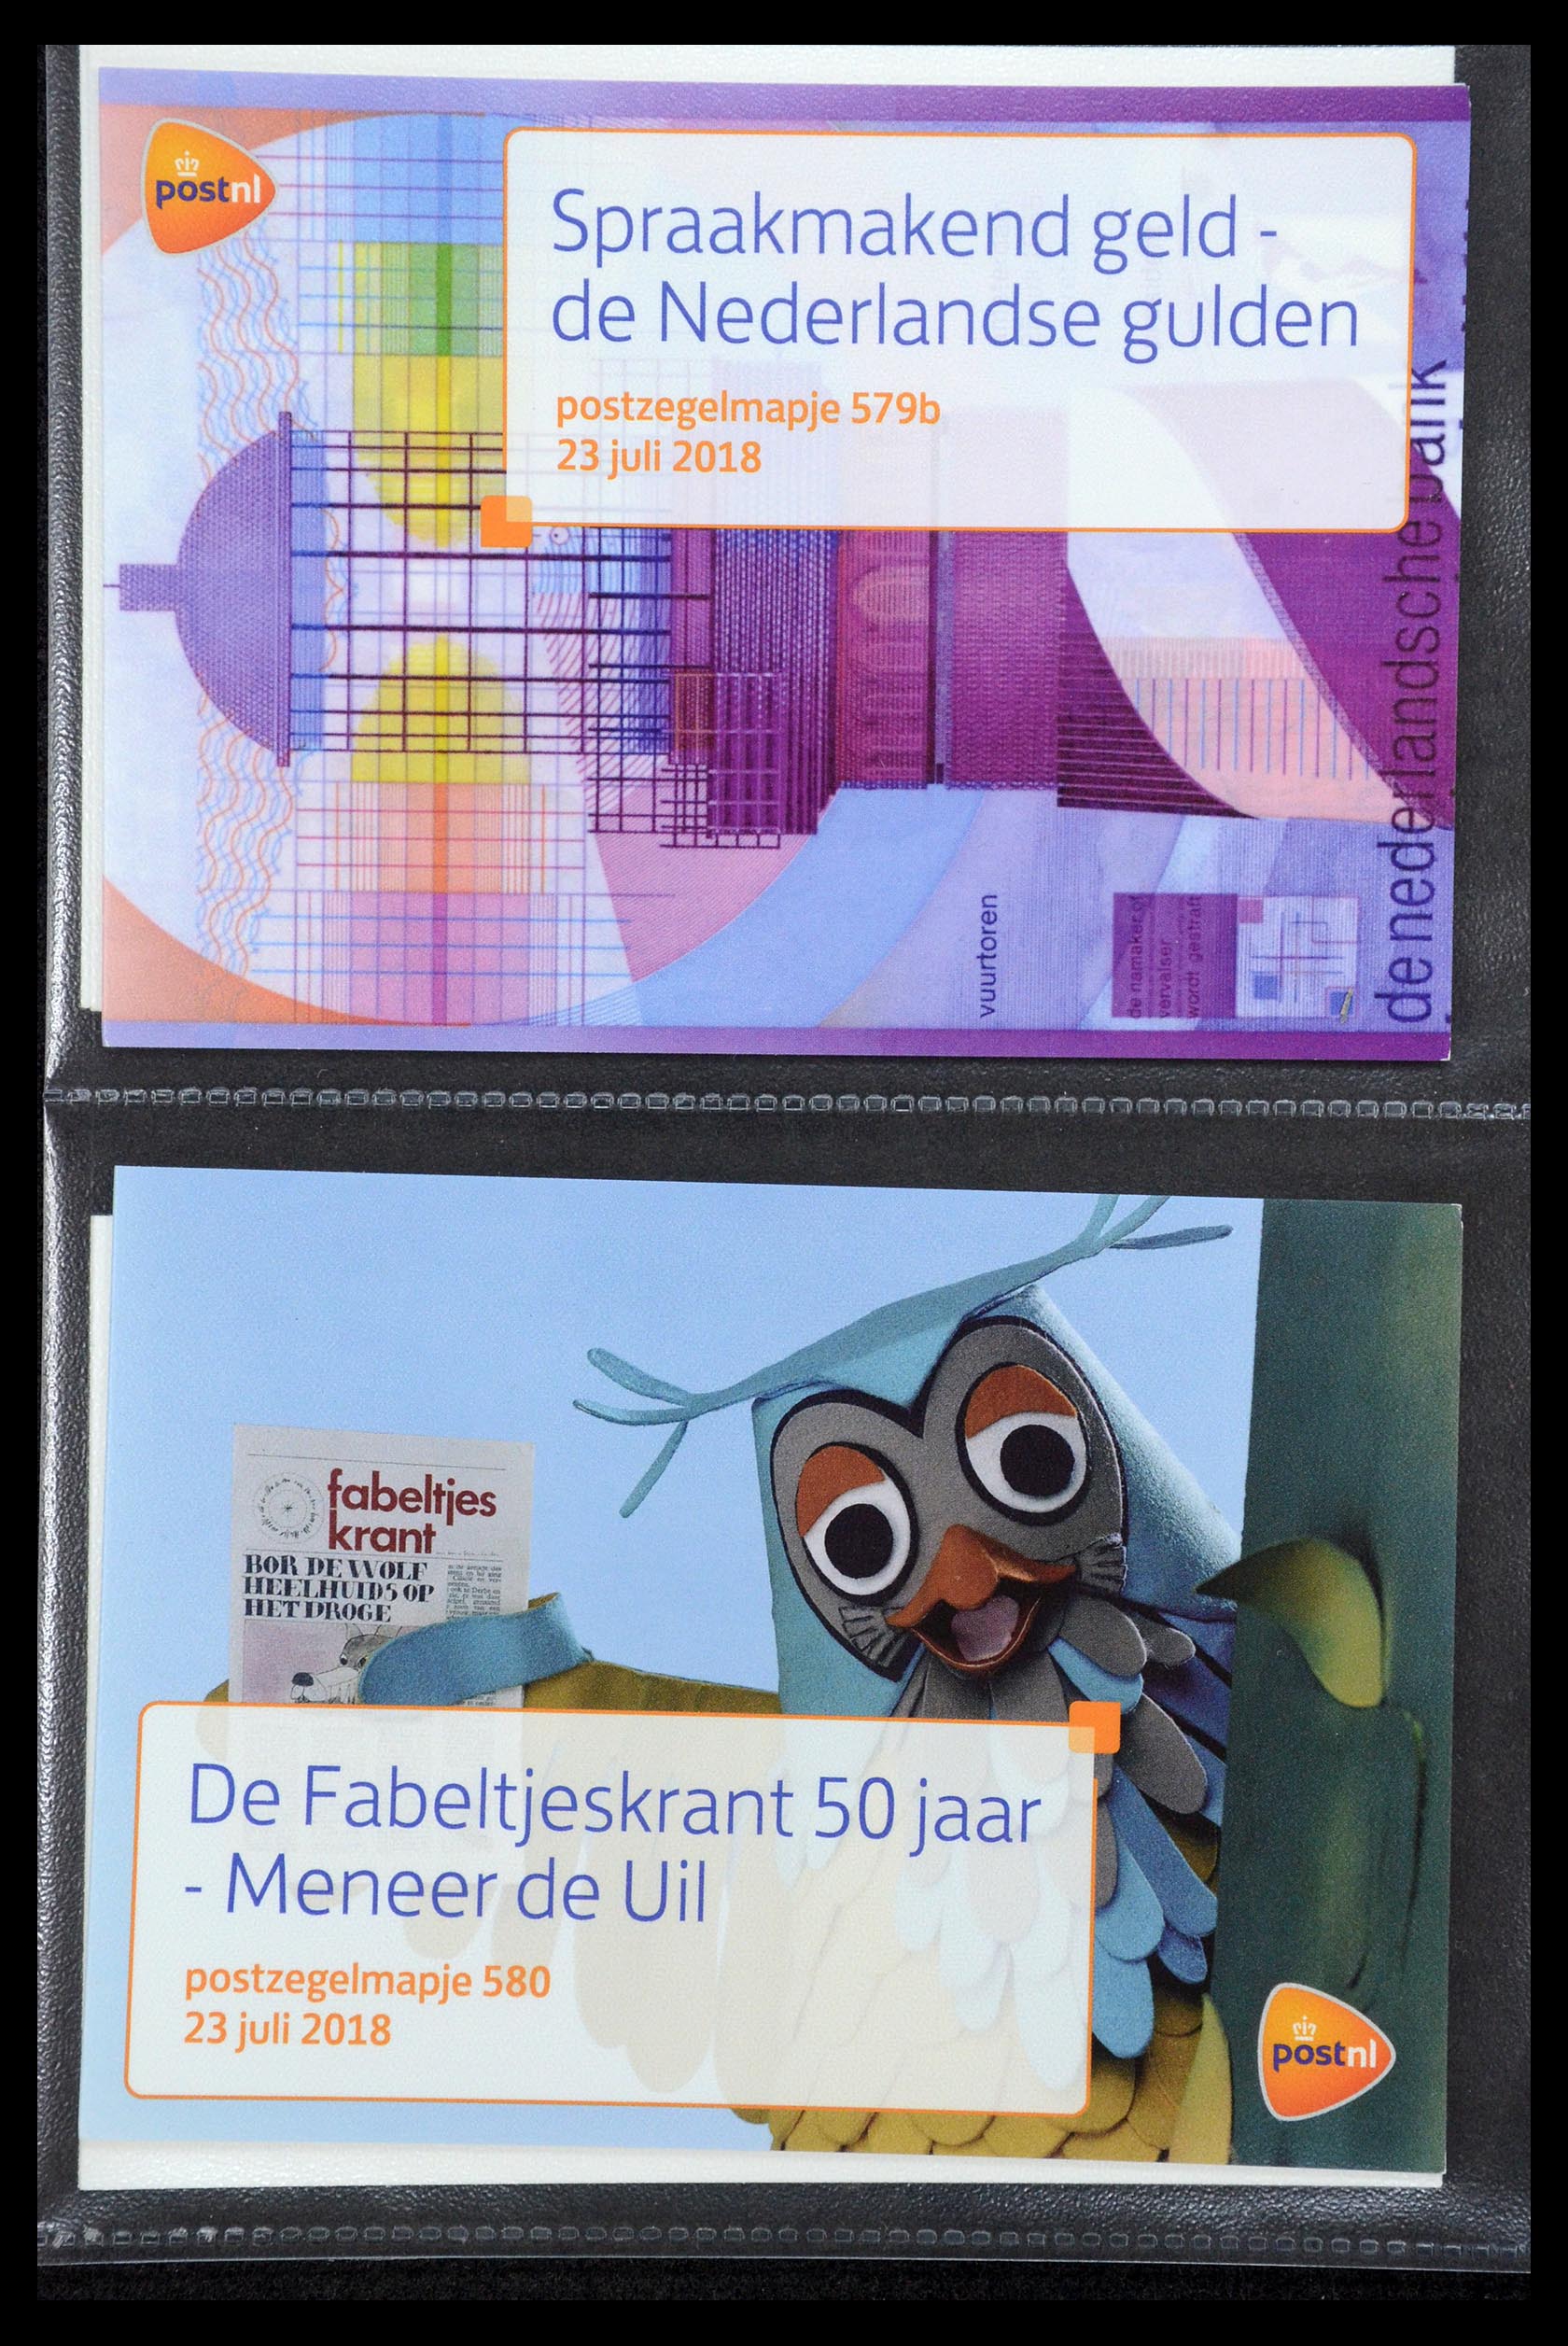 35187 350 - Stamp Collection 35187 Netherlands PTT presentation packs 1982-2019!